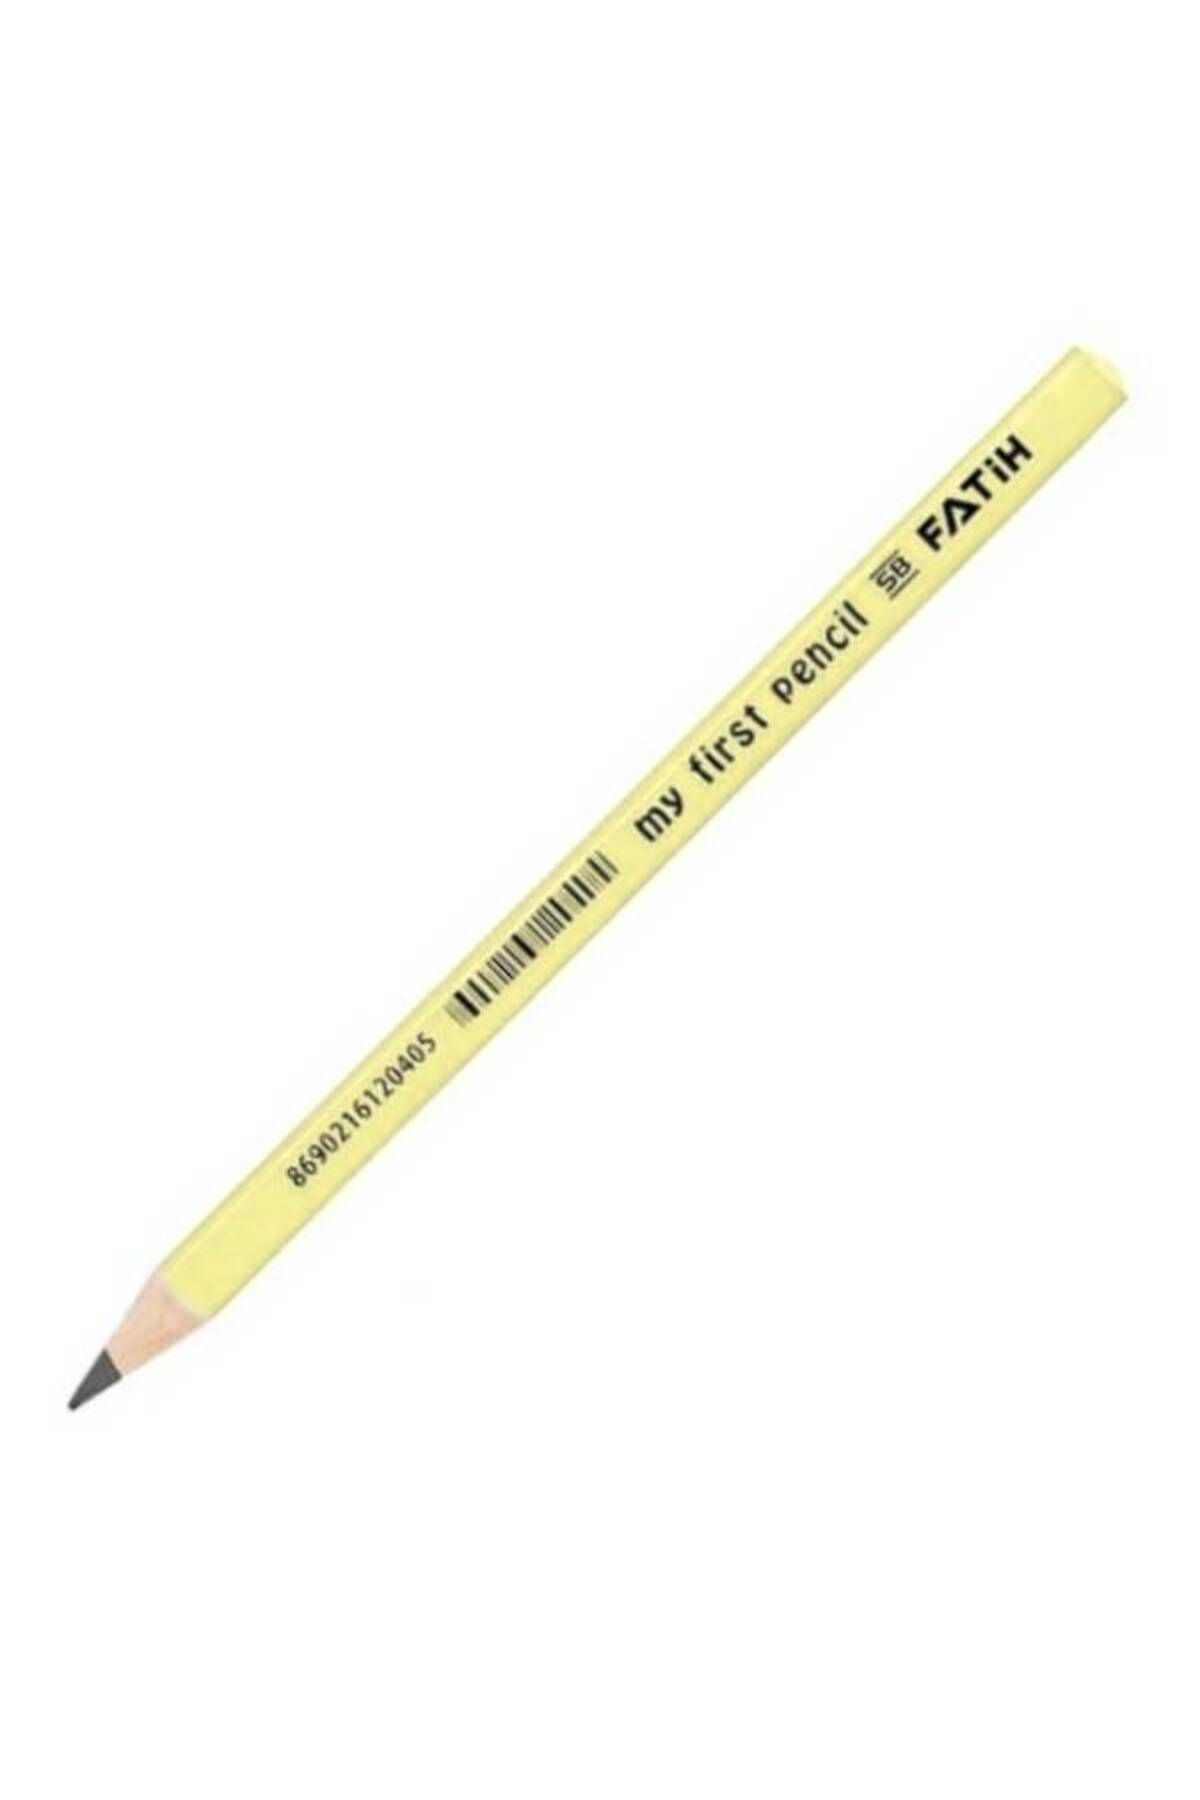 Fatih My First Pencil (İlk Kalemim) Fatih Jumbo Kalem